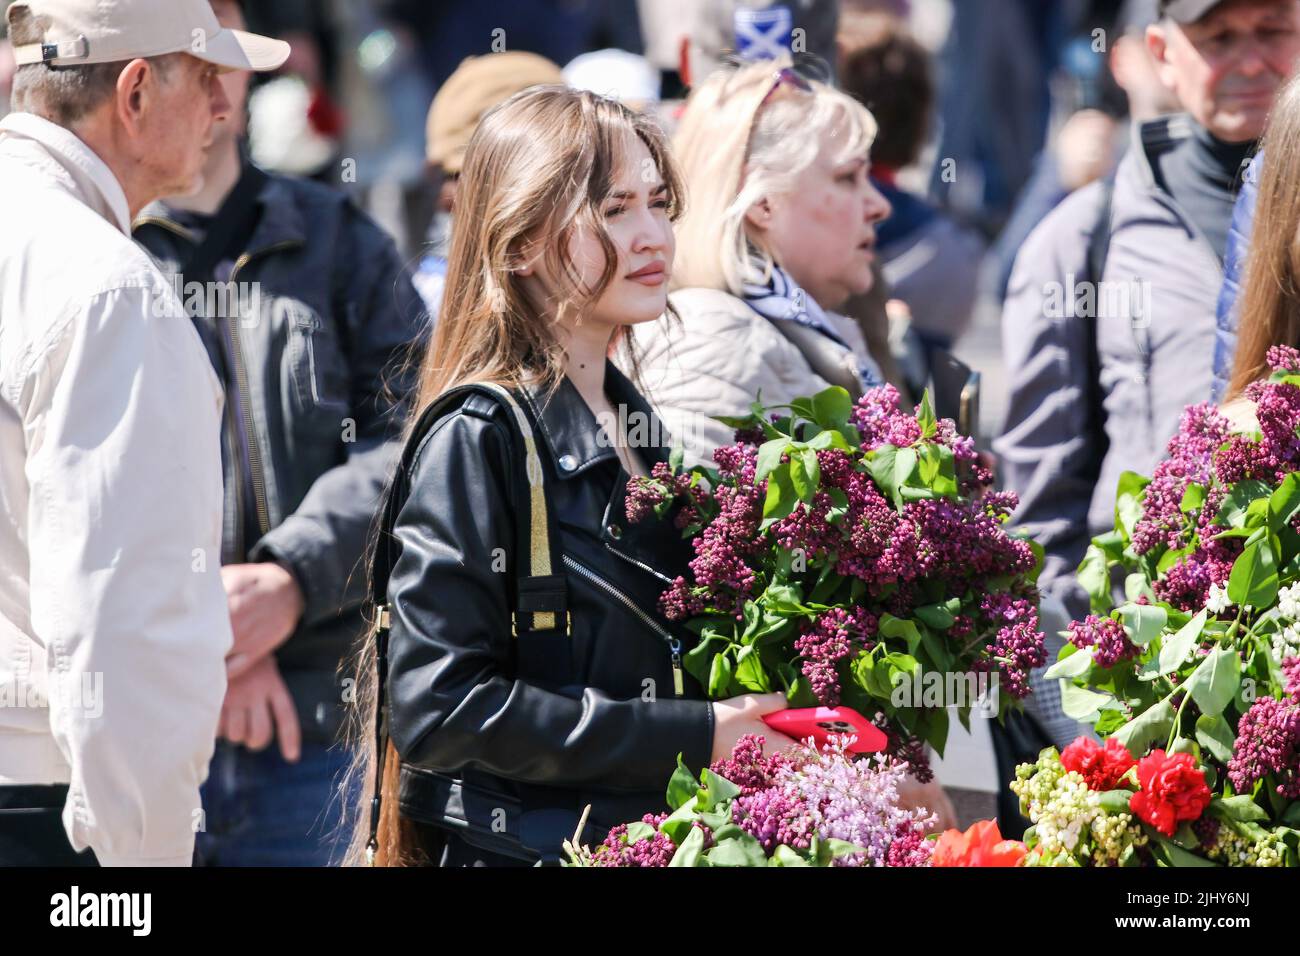 Ein junges Mädchen mit einem Strauß Flieder während der Veranstaltung. Am 9. Mai 2021 feierte die Ukraine den 76.. Jahrestag des Sieges über den Nationalsozialismus im Zweiten Weltkrieg; die Menschen ehrten die Erinnerung an die Toten, indem sie Blumen auf dem Walk of Fame im Park an das Denkmal des Unbekannten Seemanns legten. T.G. Schewtschenko. (Foto von Viacheslav Onyschtschenko / SOPA Images/Sipa USA) Stockfoto